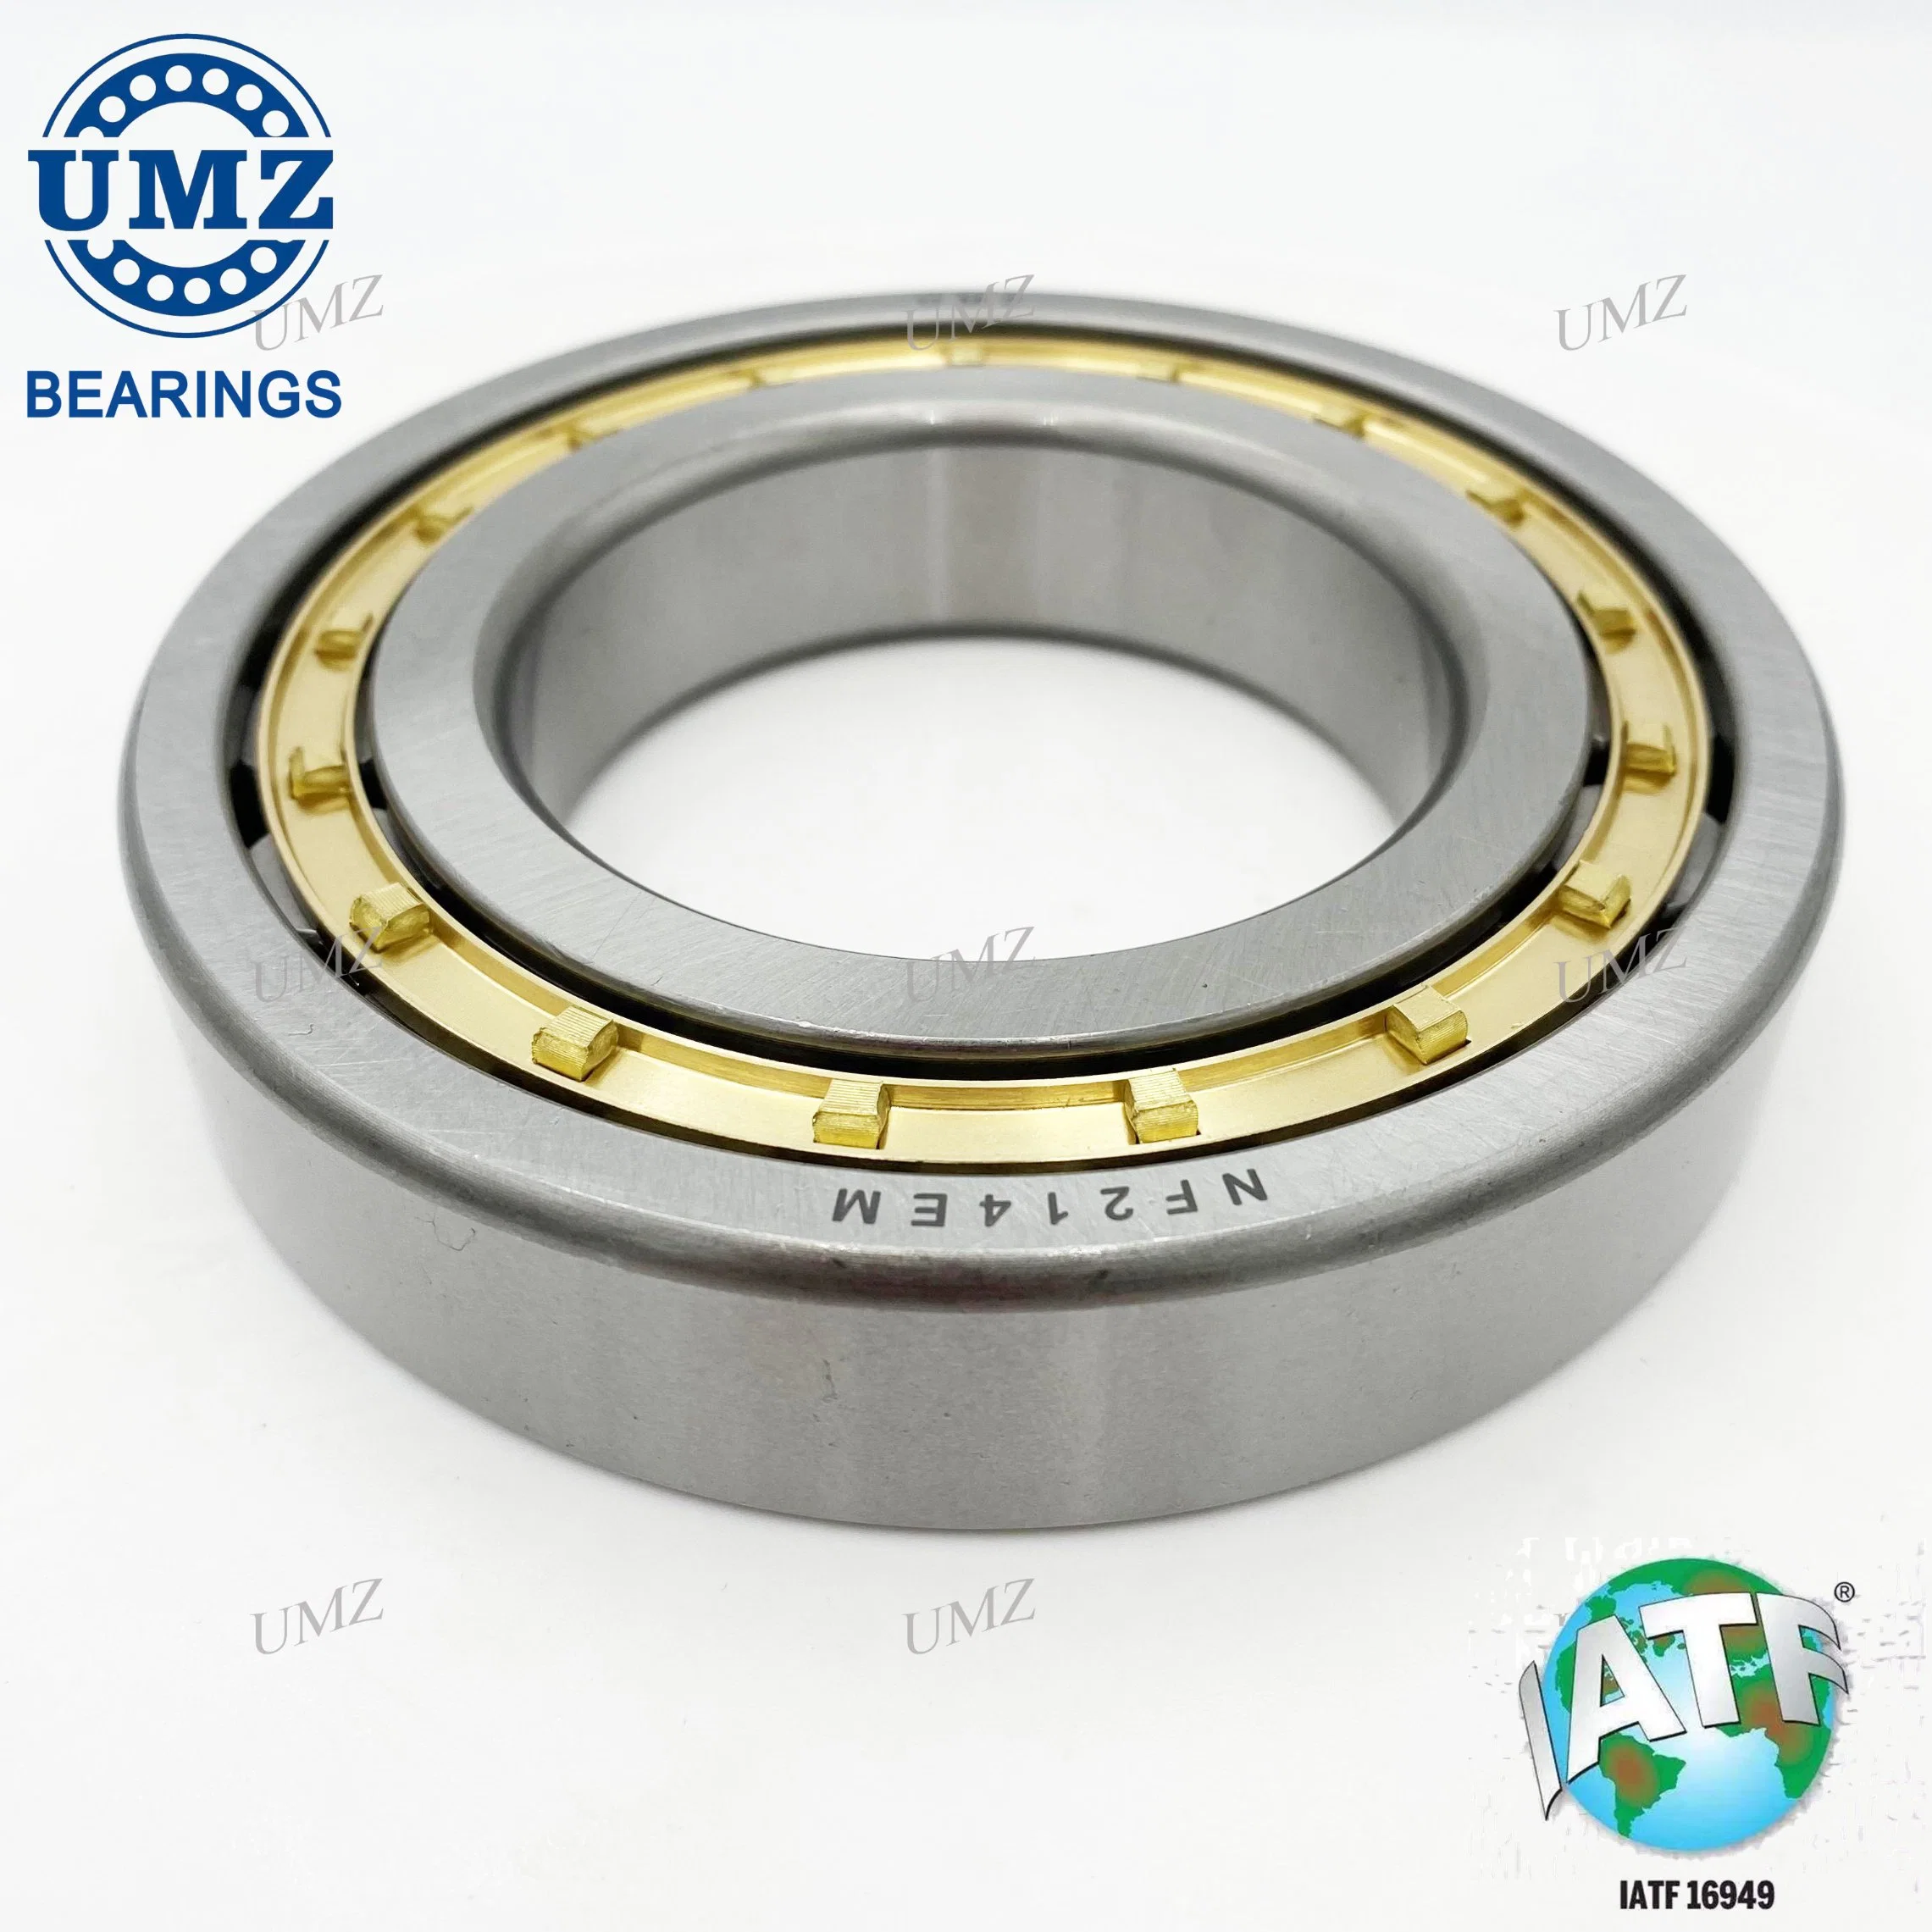 Umz Bearing NF209em NF208em NF207em NF206em Cylindrical Roller Bearing